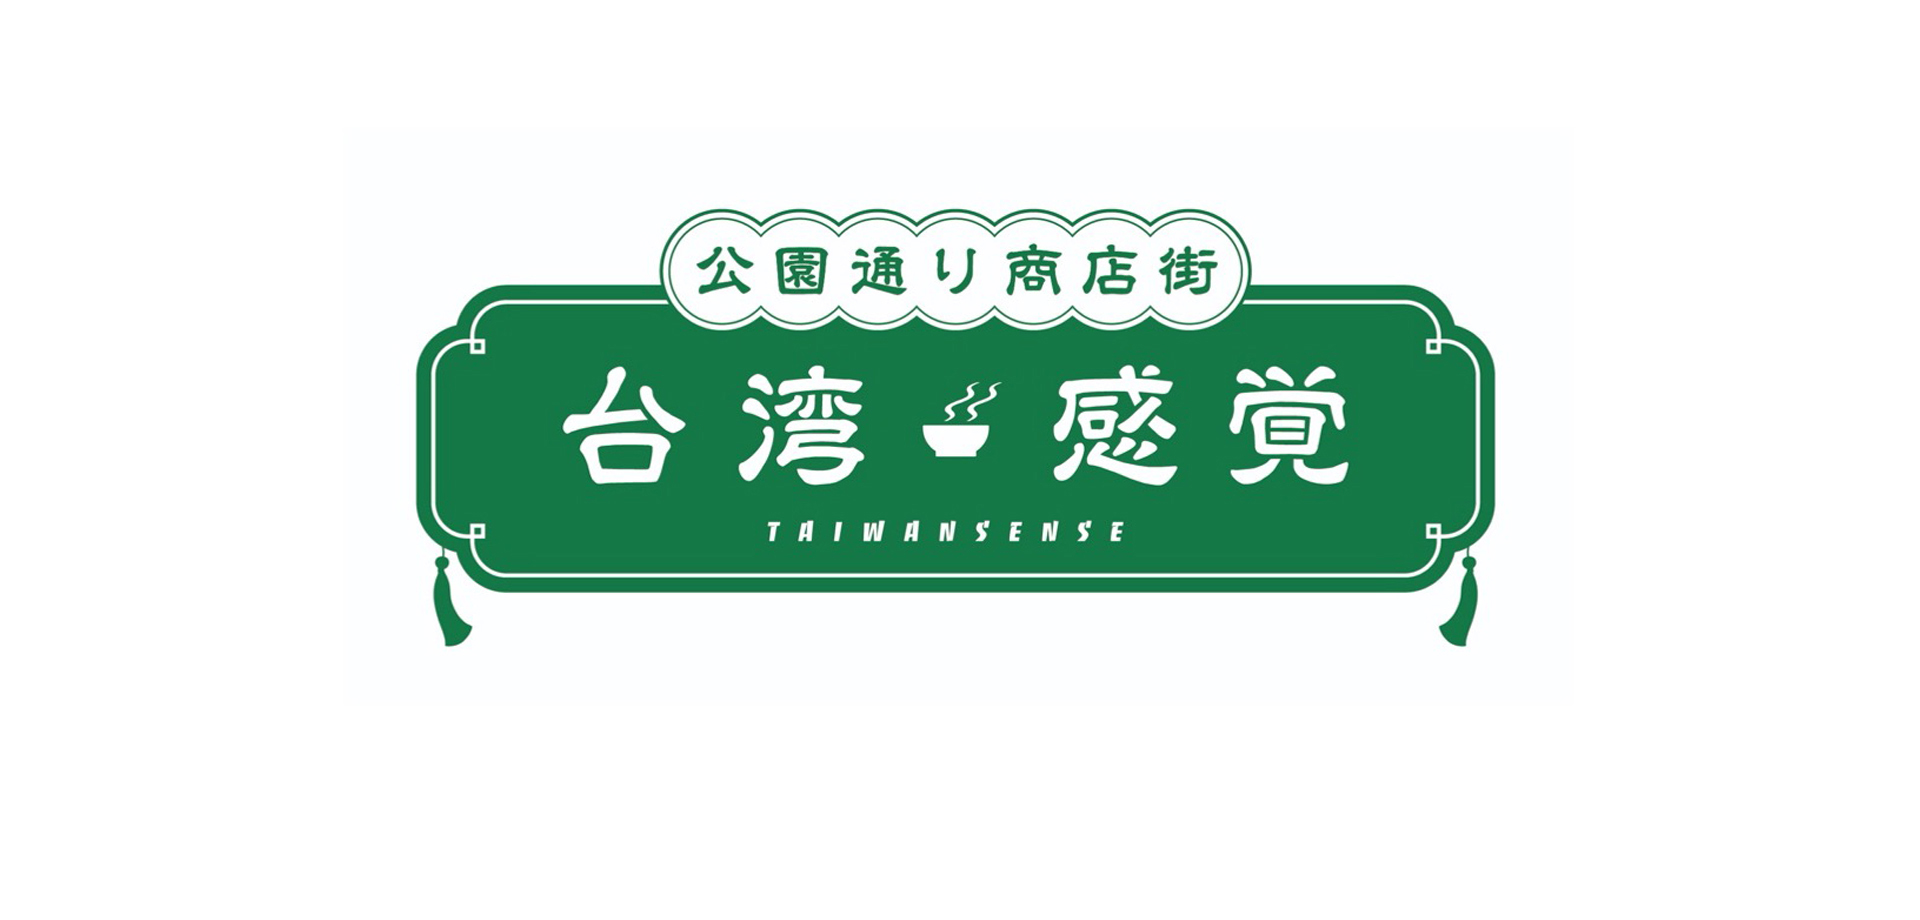 公園通り商店街 台湾感覚 ロゴ